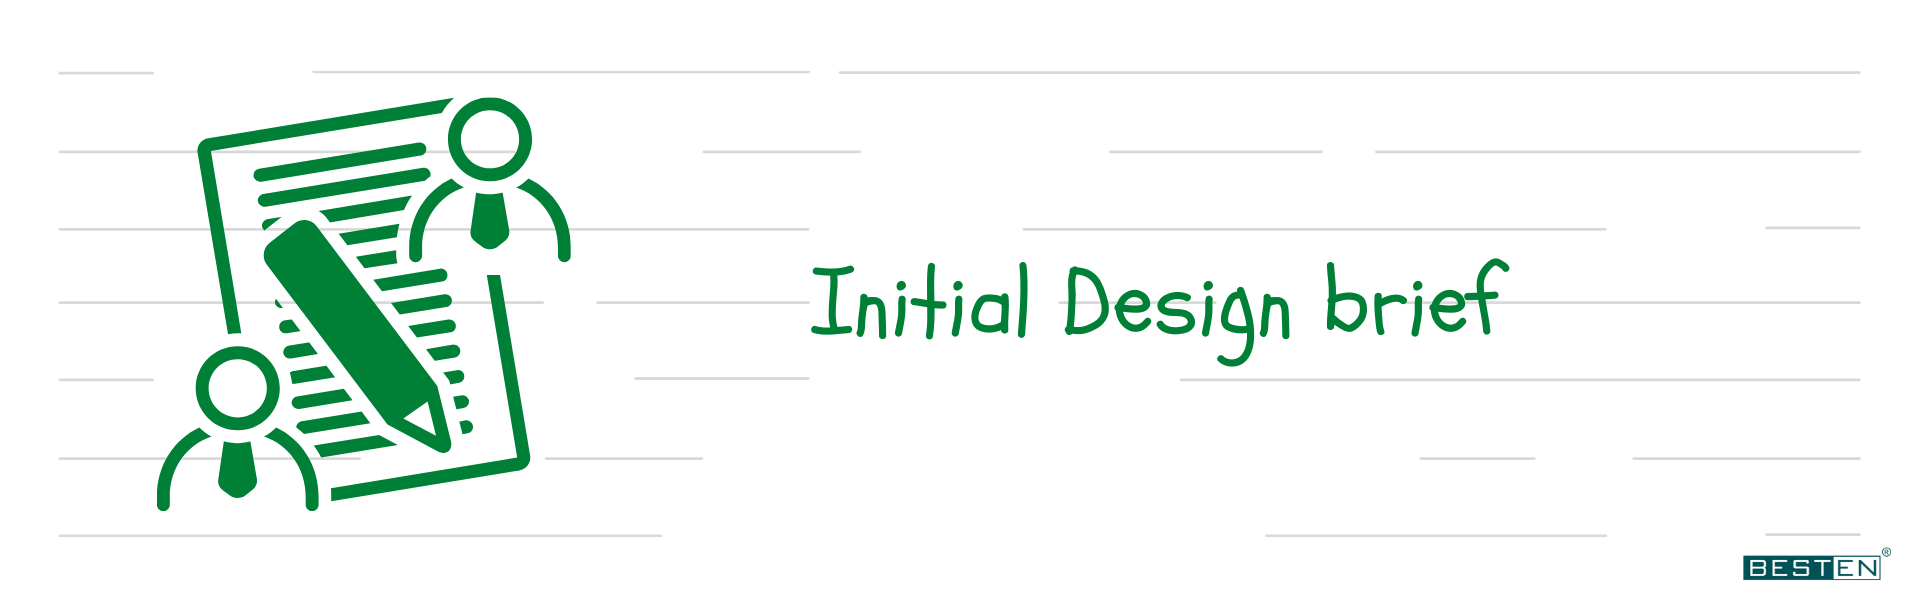 initial design brief